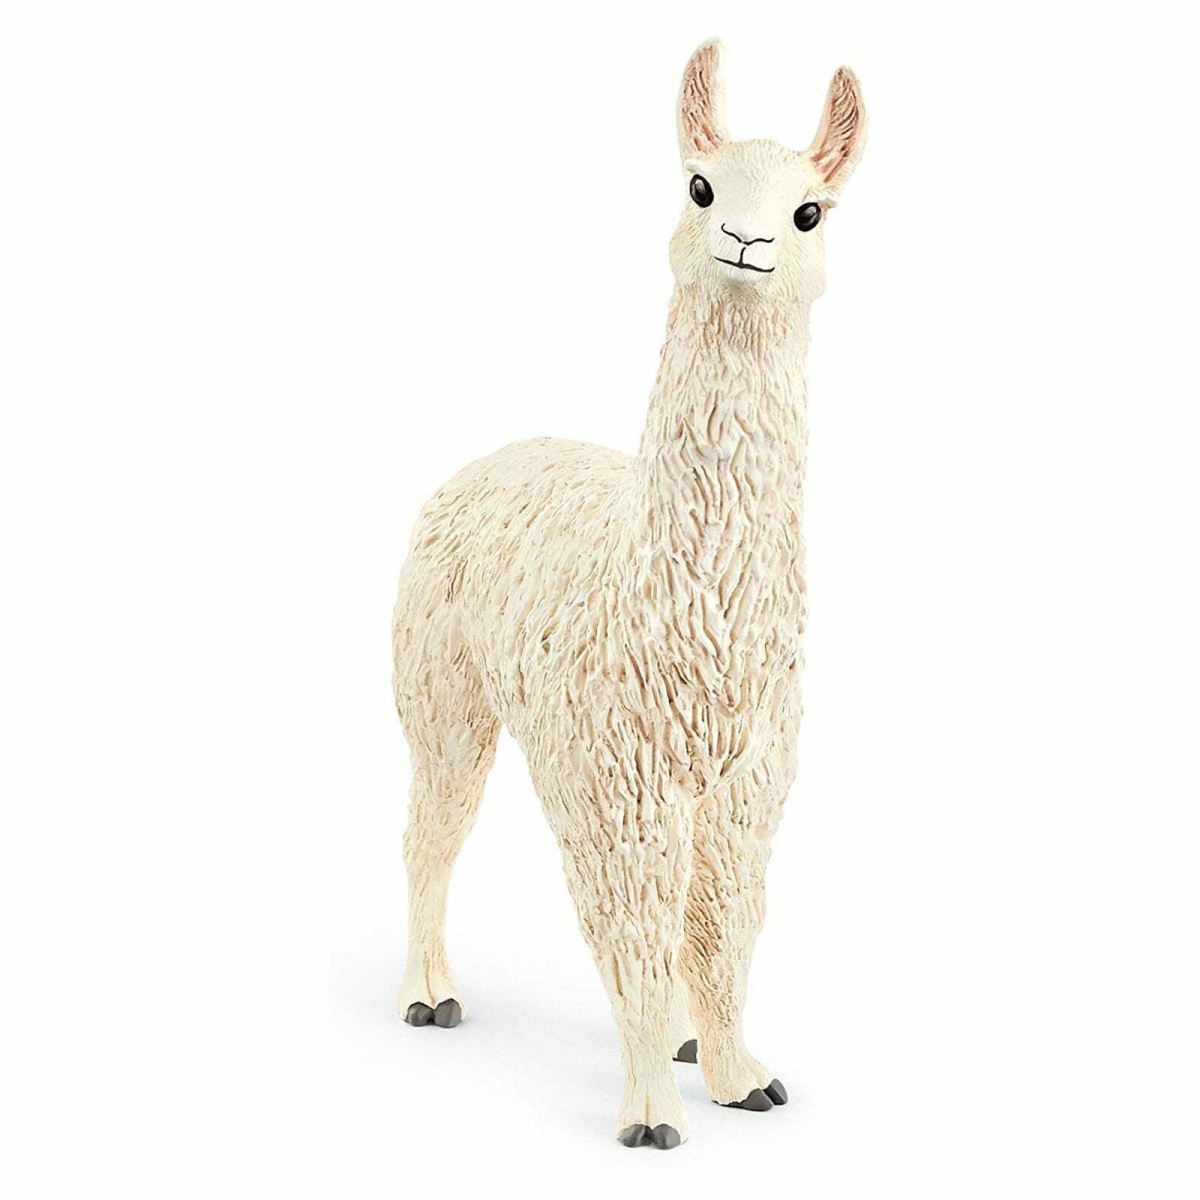 Picture of Schleich North America 101973 Llama Animal Figurine, White